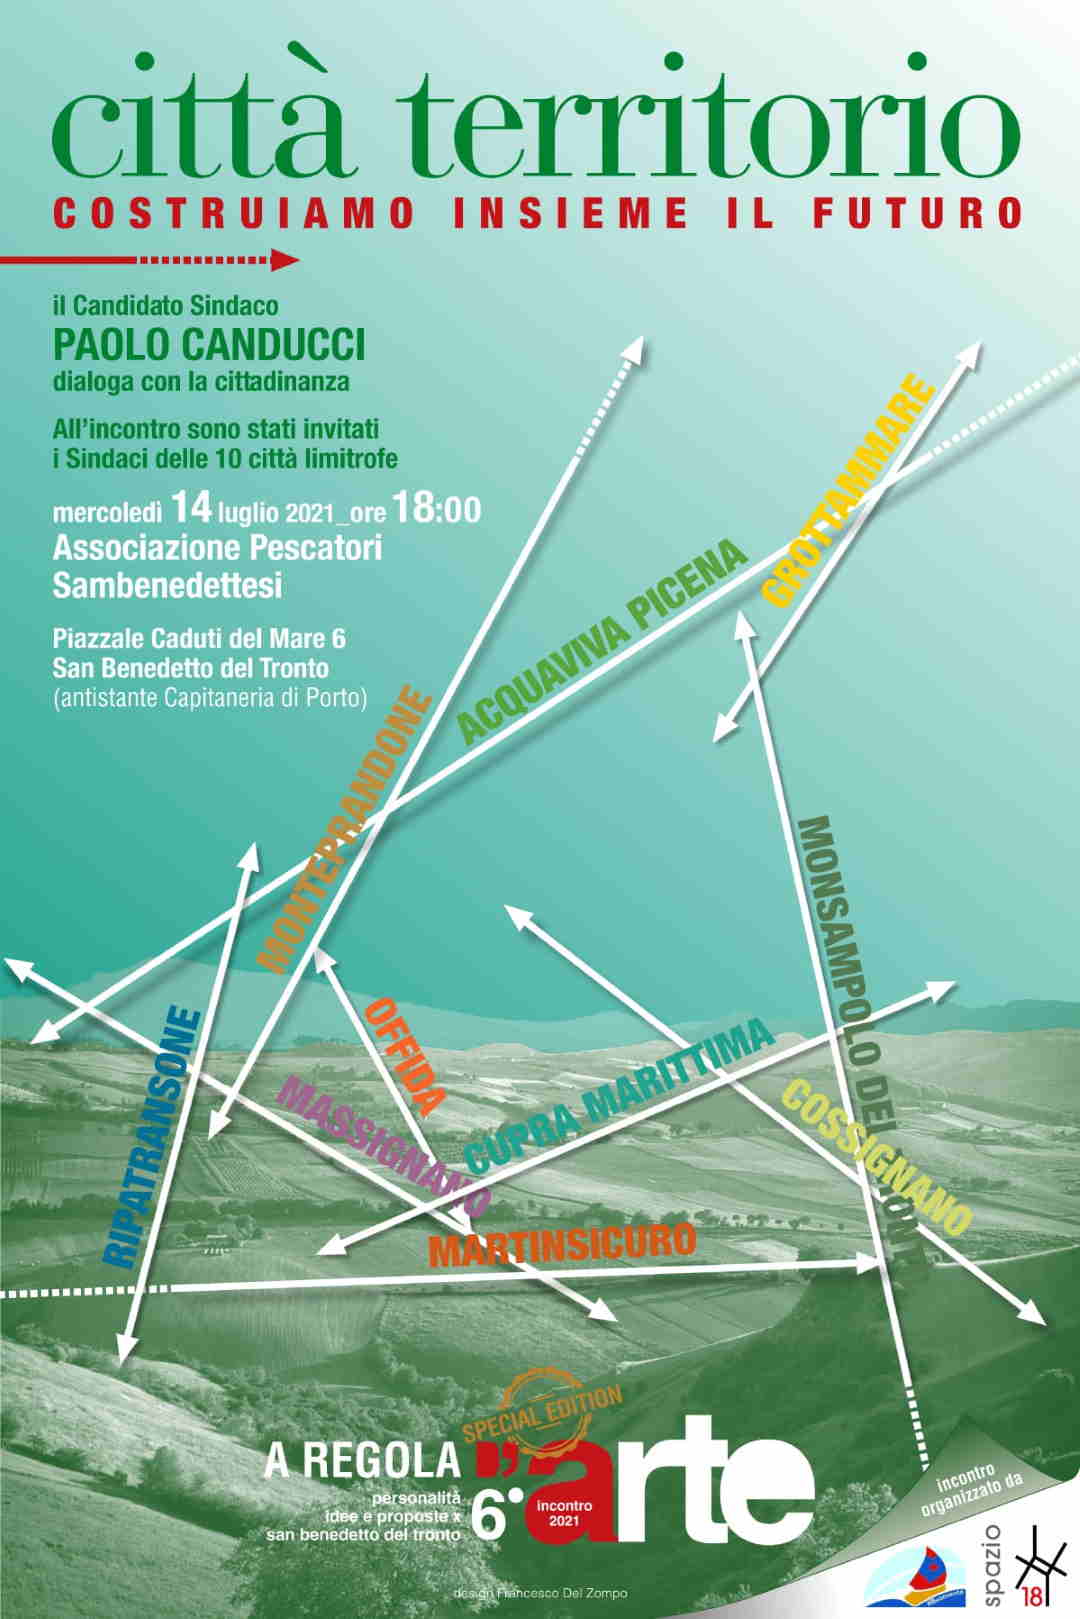 Paolo Canducci, “Città Territorio” per costruire insieme il futuro